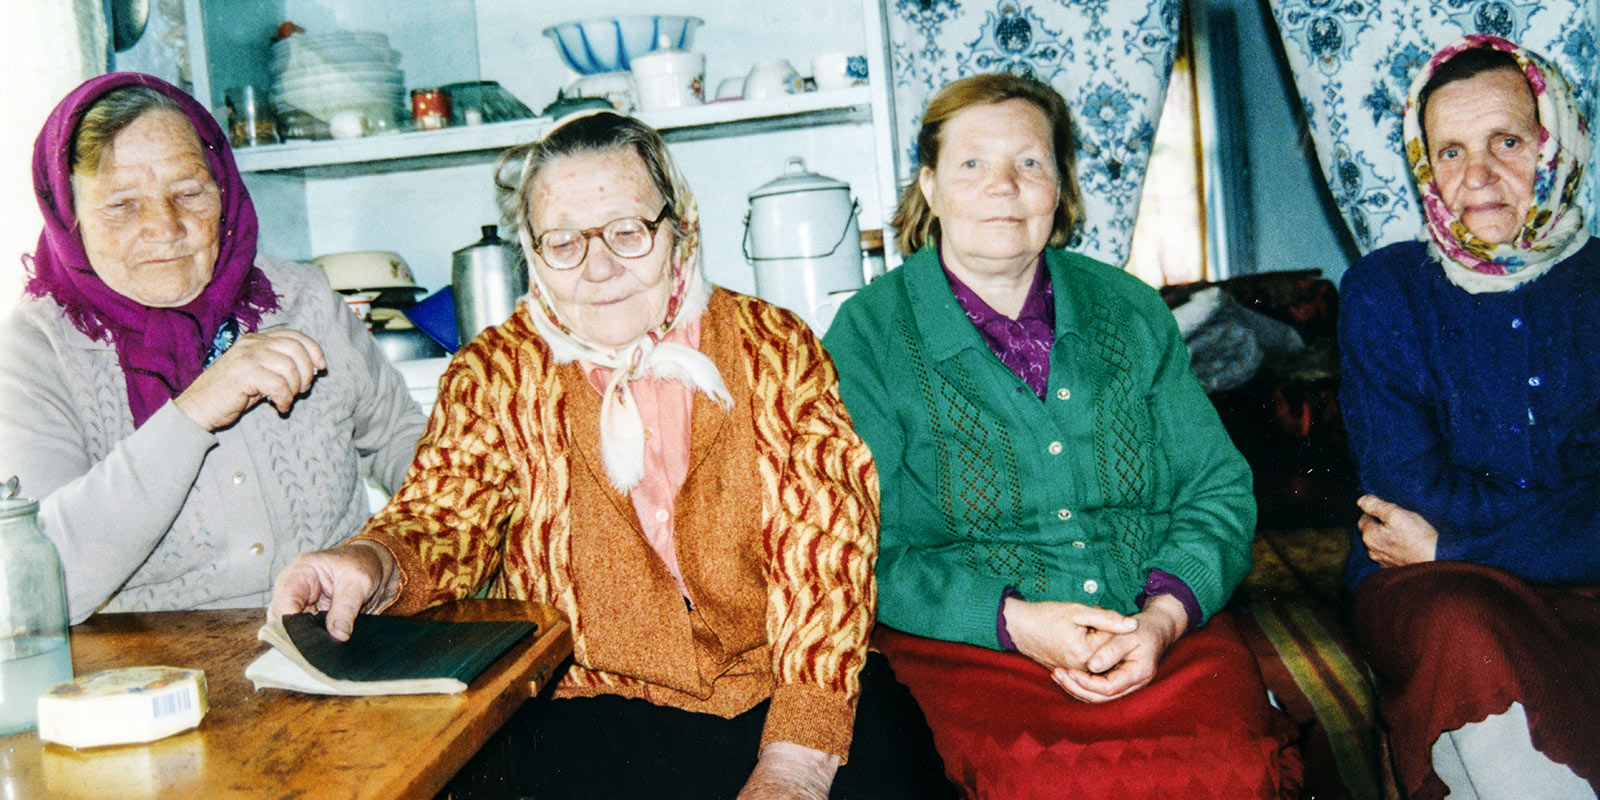 Singers from Oravka: Berta Kalamis, Berta Hank, Aliide Kalamis, and Erna Kalamis. Photo: A. Korb 1998.